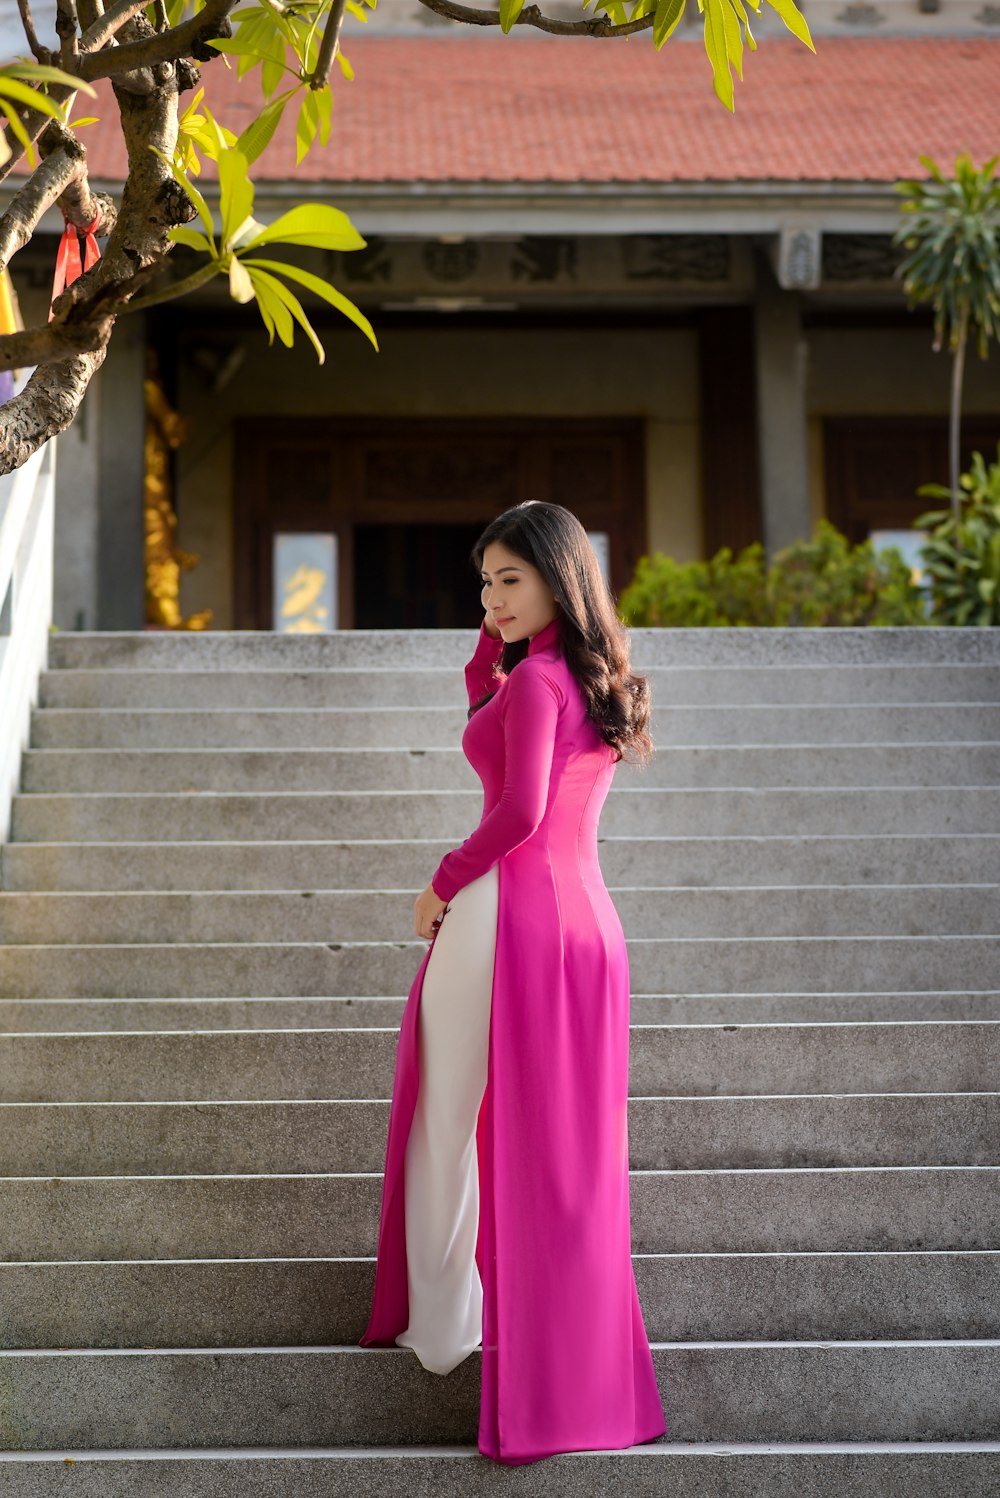 회색 콘크리트 계단에 서 있는 분홍색 긴팔 드레스를 입은 여자